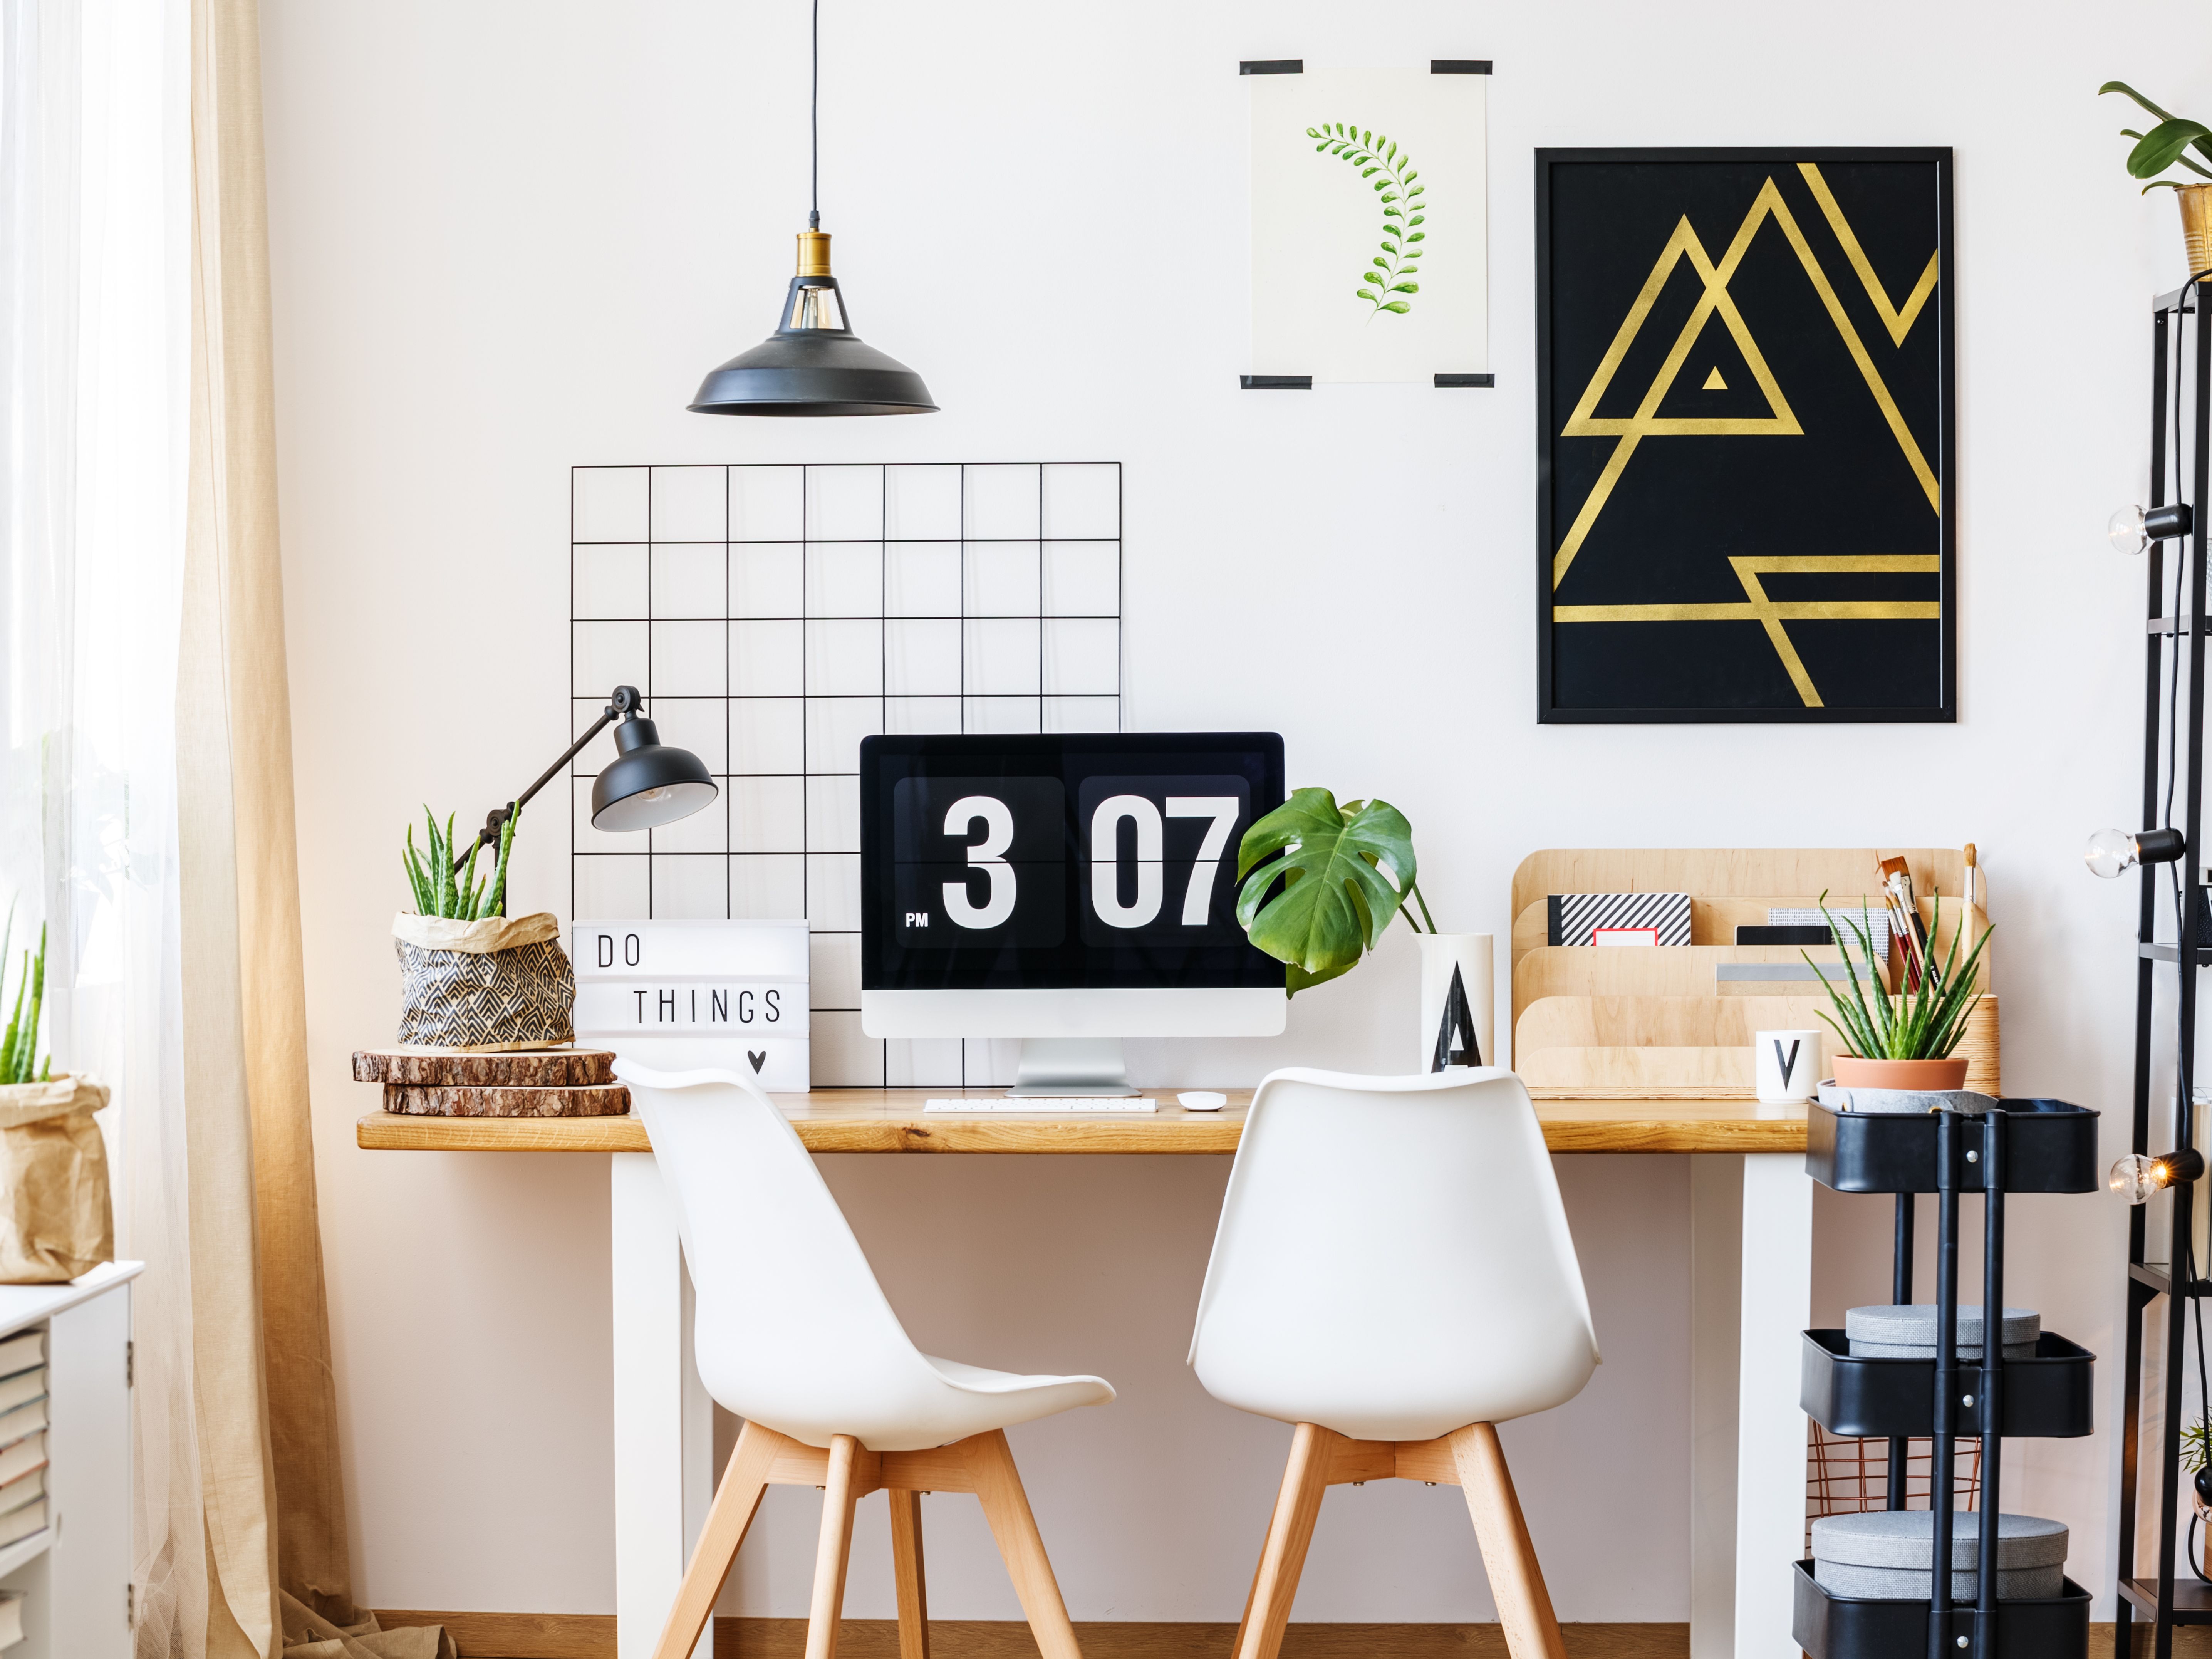 Les astuces pour bien décorer votre bureau – Carabin